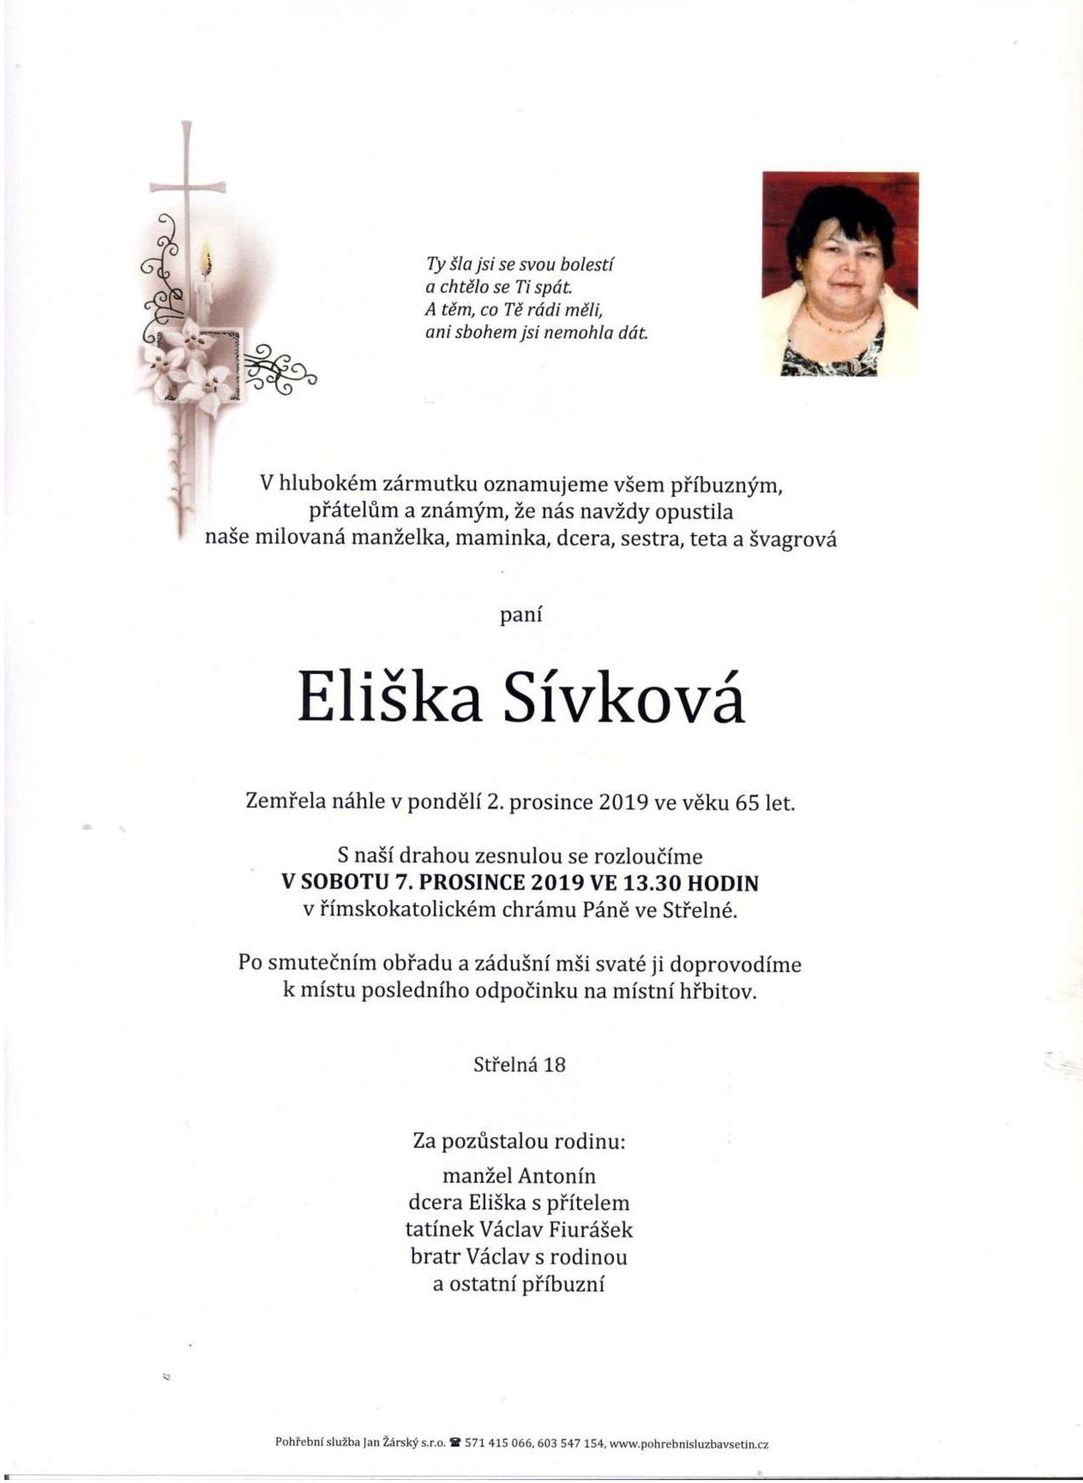 Eliška Sívková